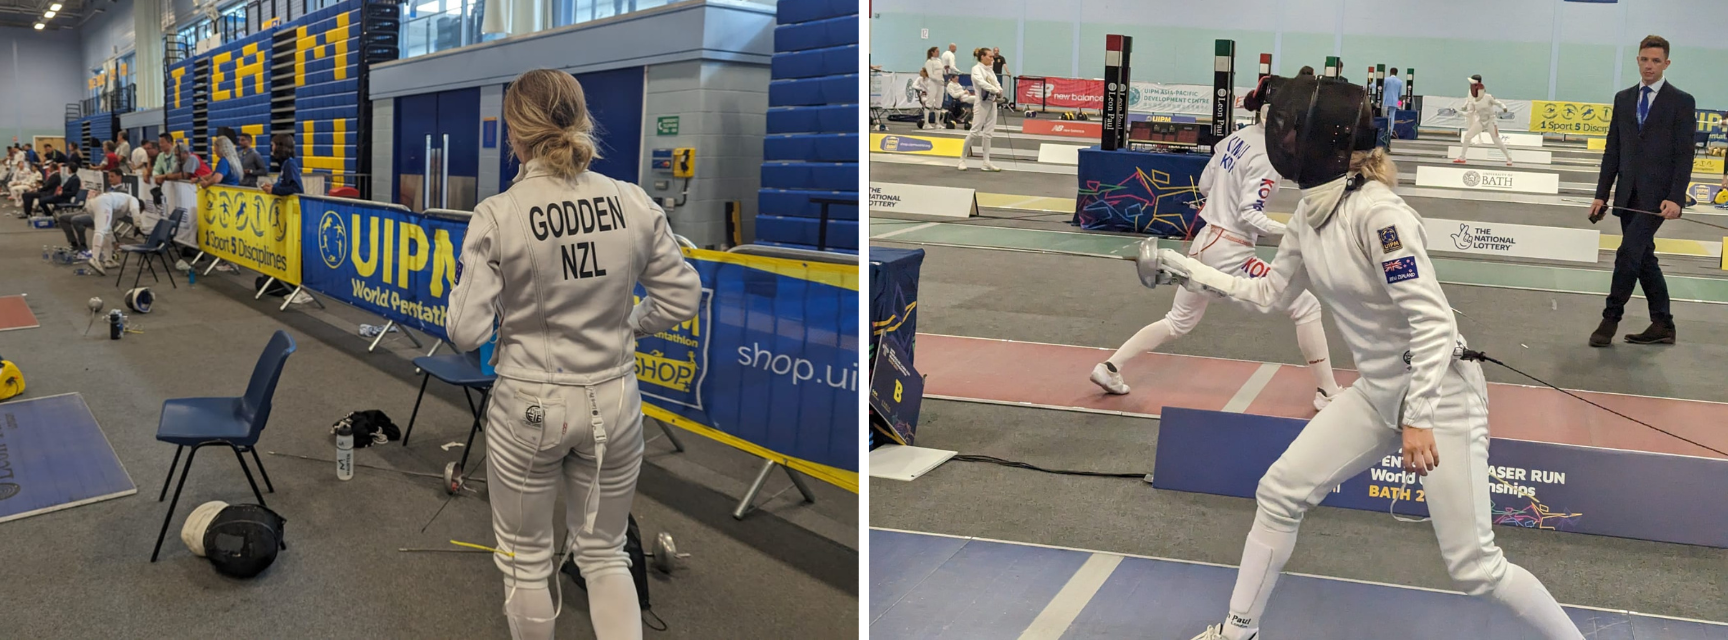 Two images of Emma Godden Fencing